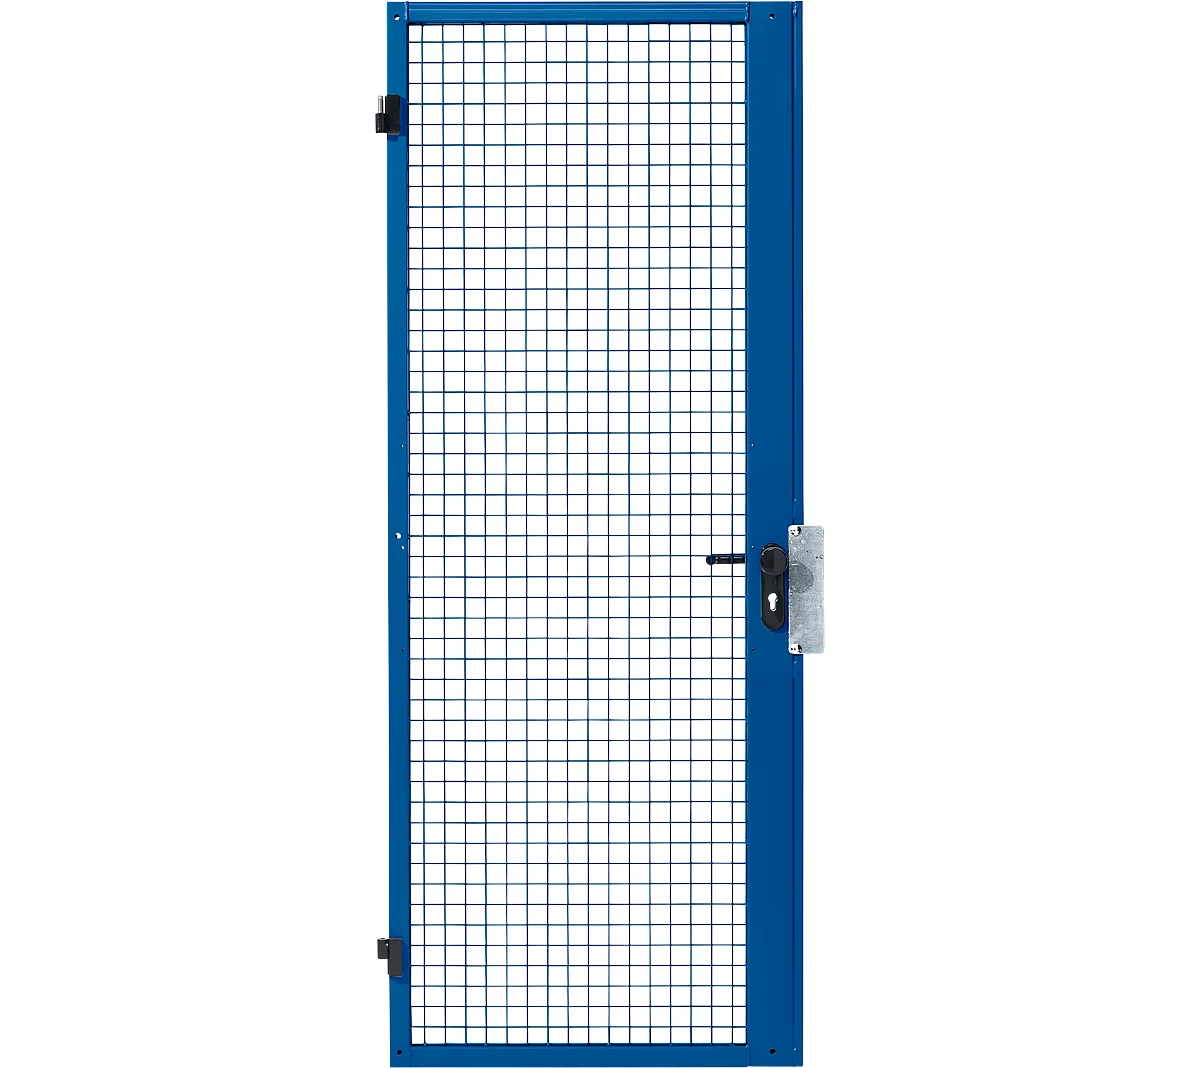 Puerta batiente de una hoja, para sistema de paredes separadoras, bisagra de puerta derecha/izquierda, An 850 x Al 2070 mm, con cerradura antipánico, azul